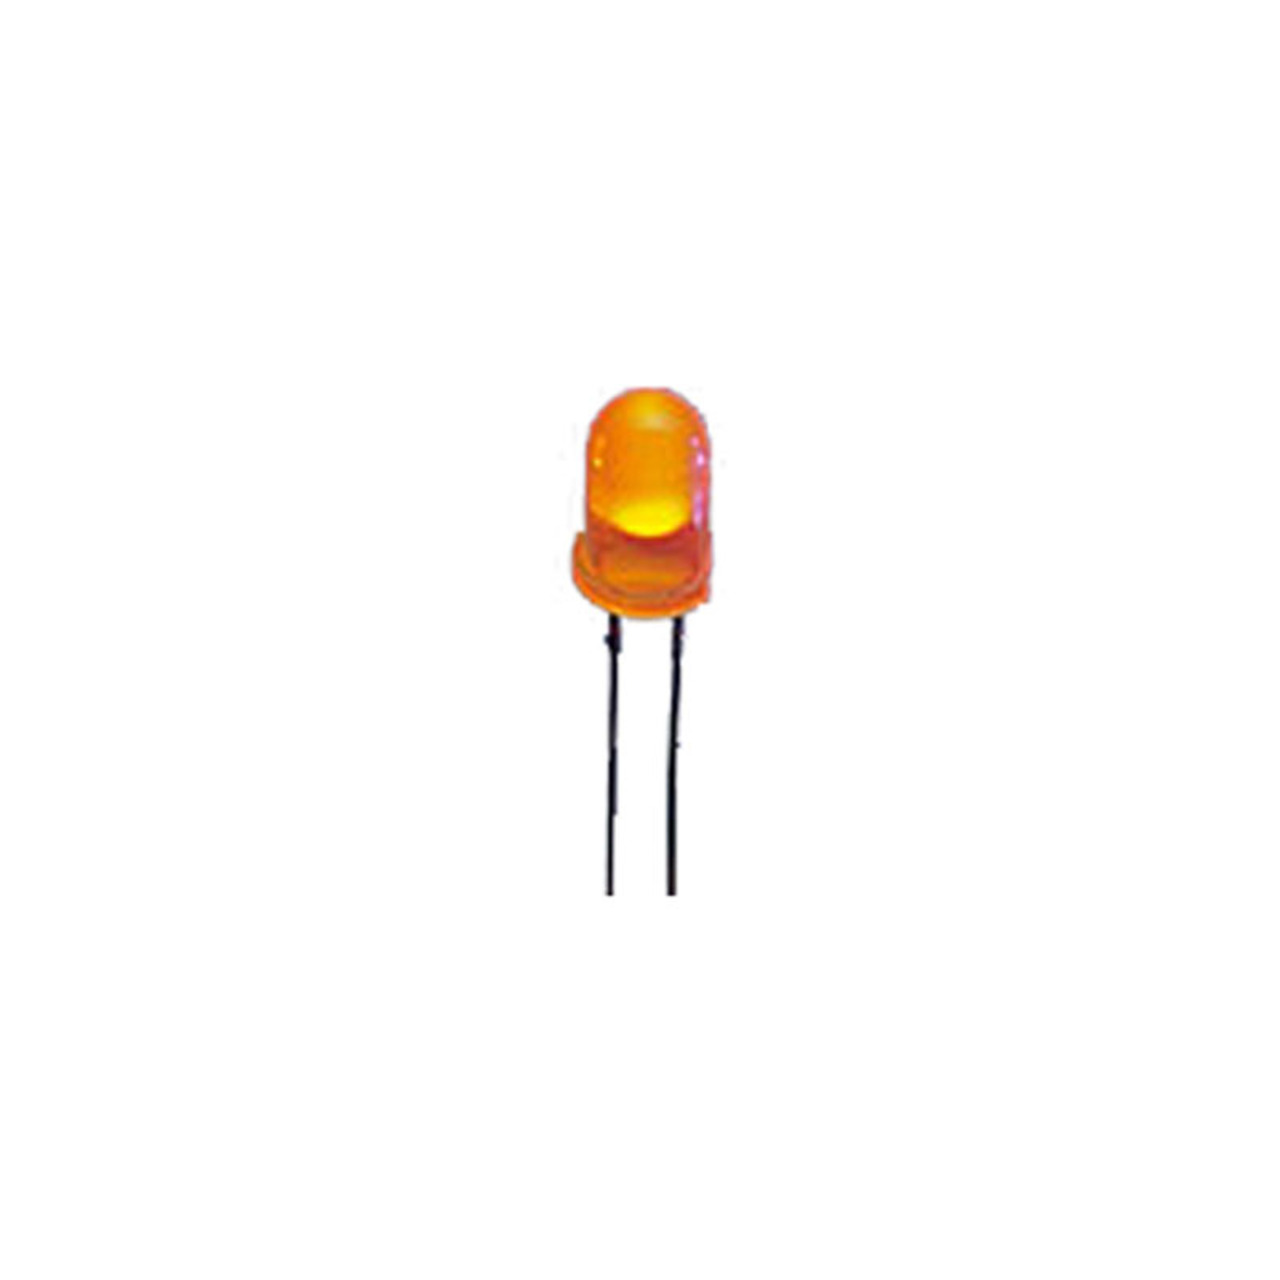 Kingbright Superhelle 3 mm LED- Orange- 1-300 mcd